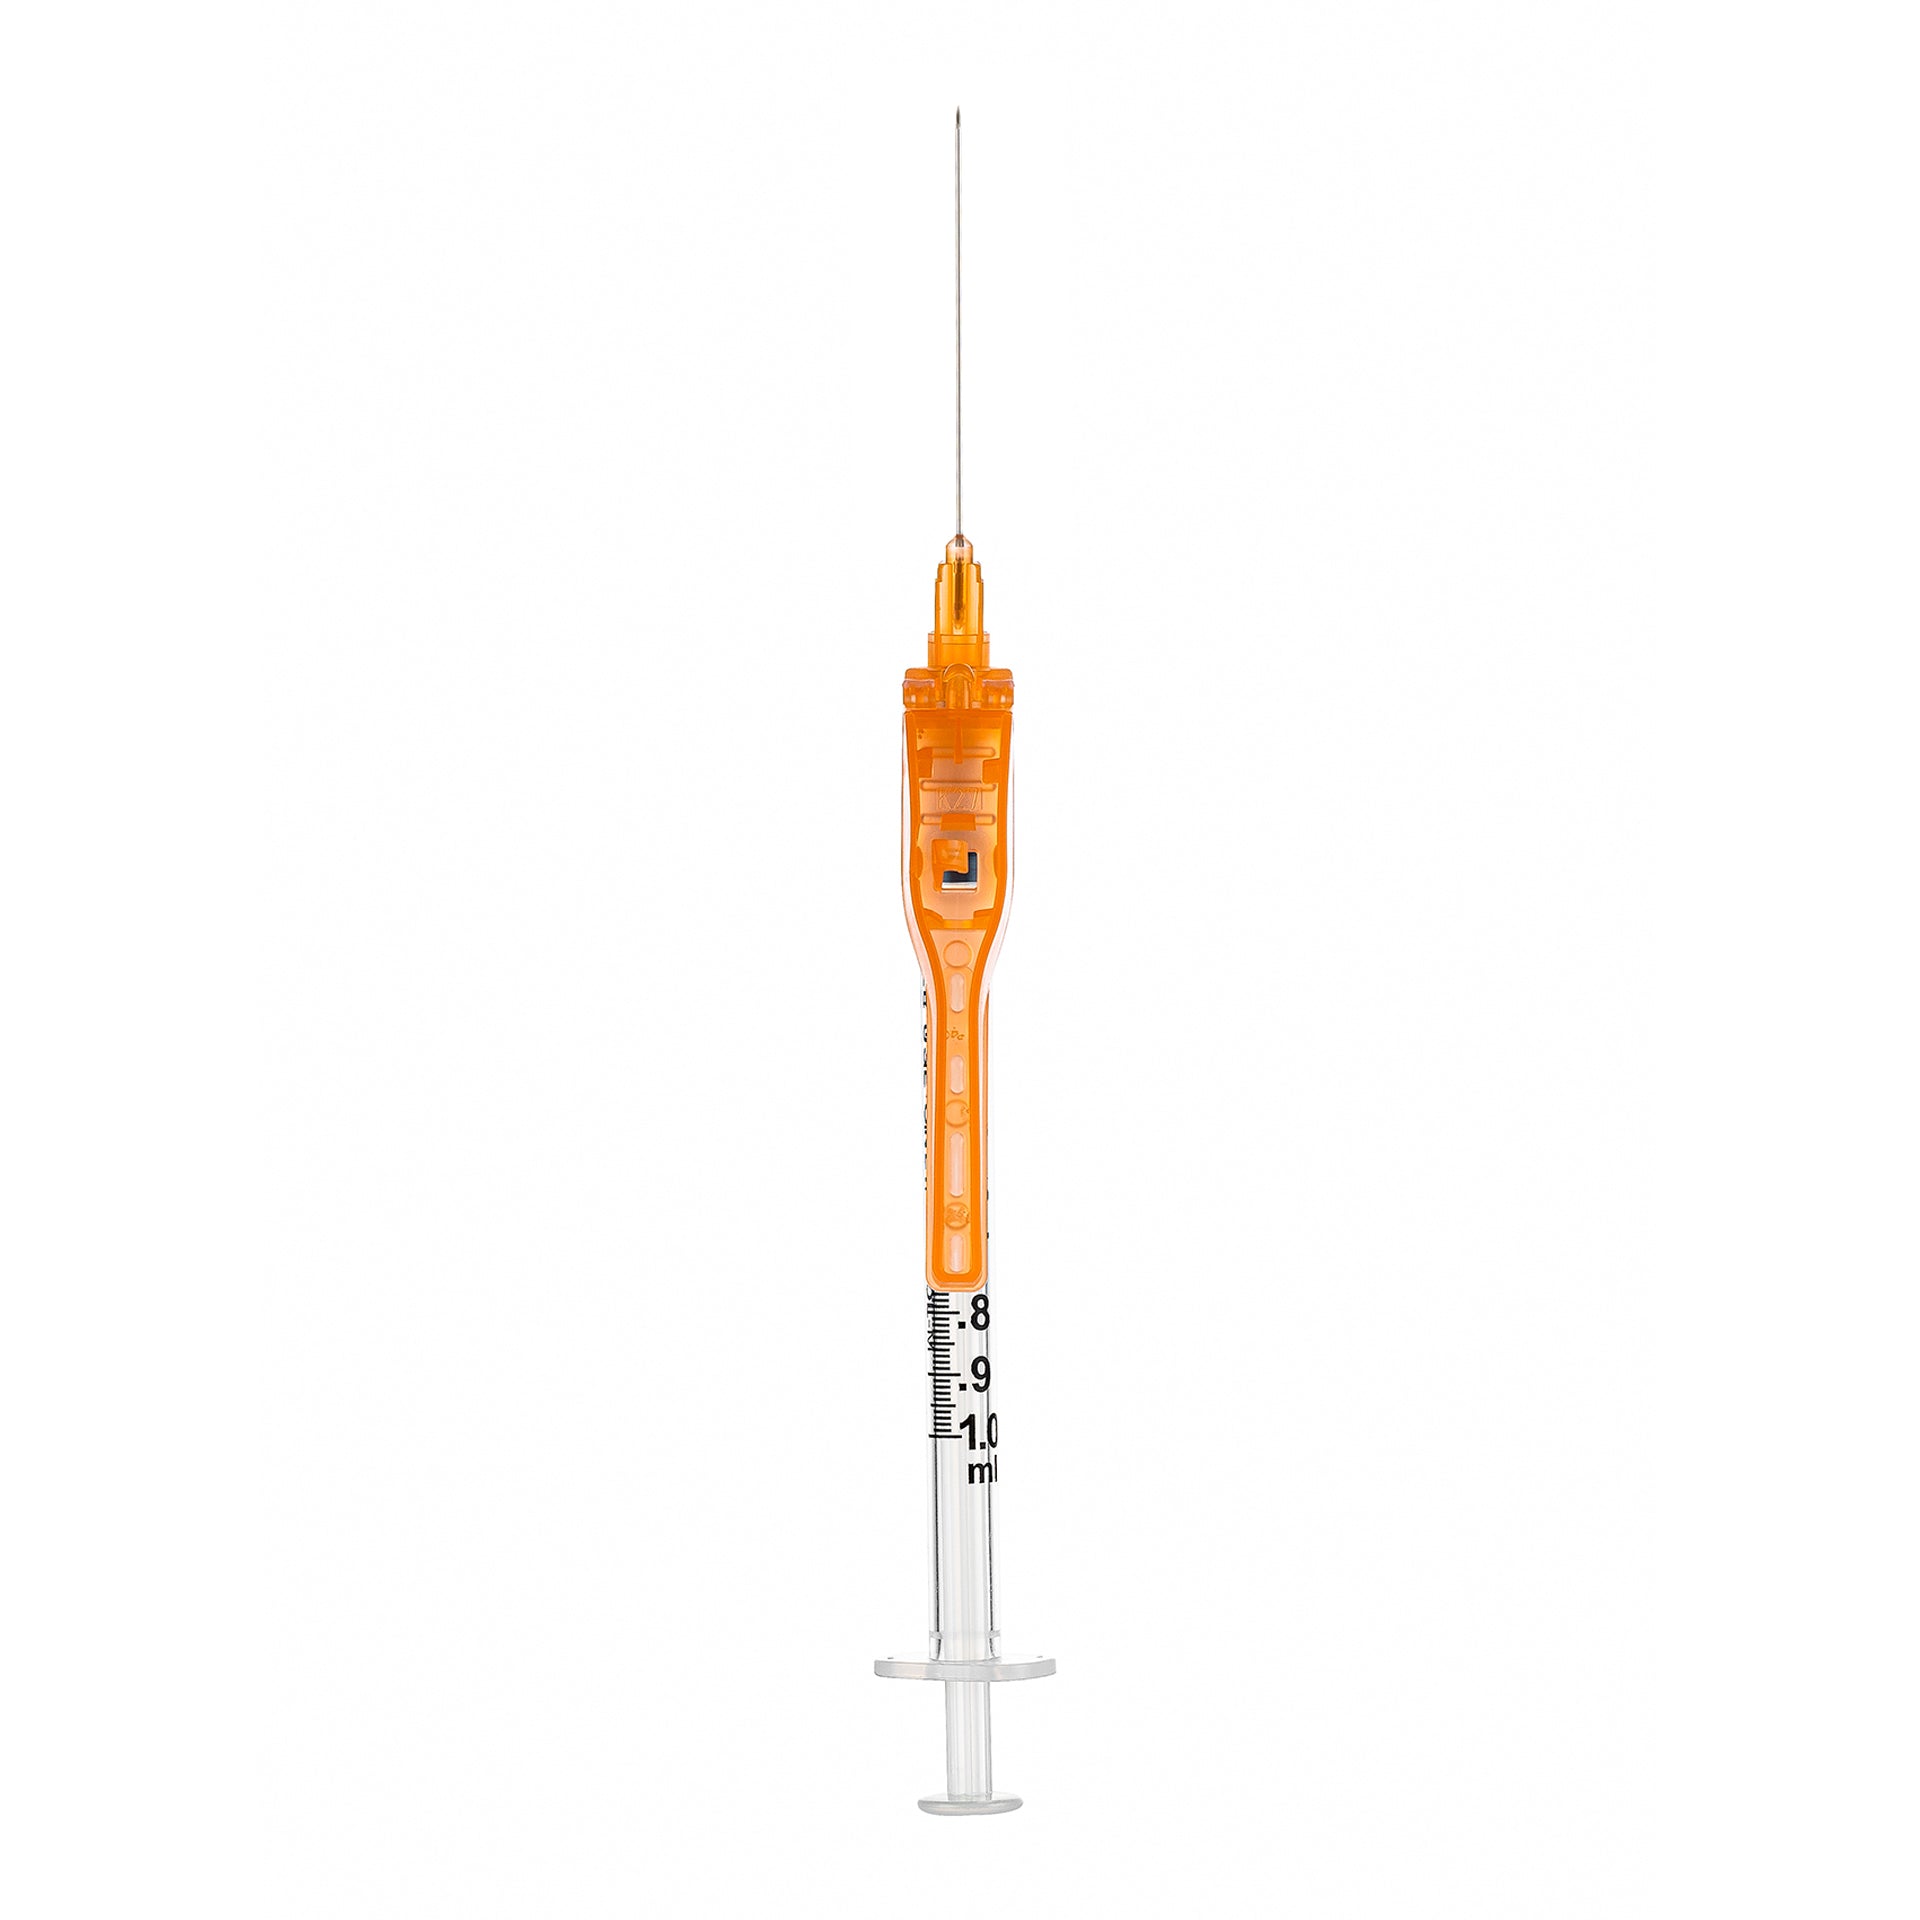 BX/50 - SOL-CARE 3ml Luer Lock Syringe w/Safety Needle 25G*1 1/2''